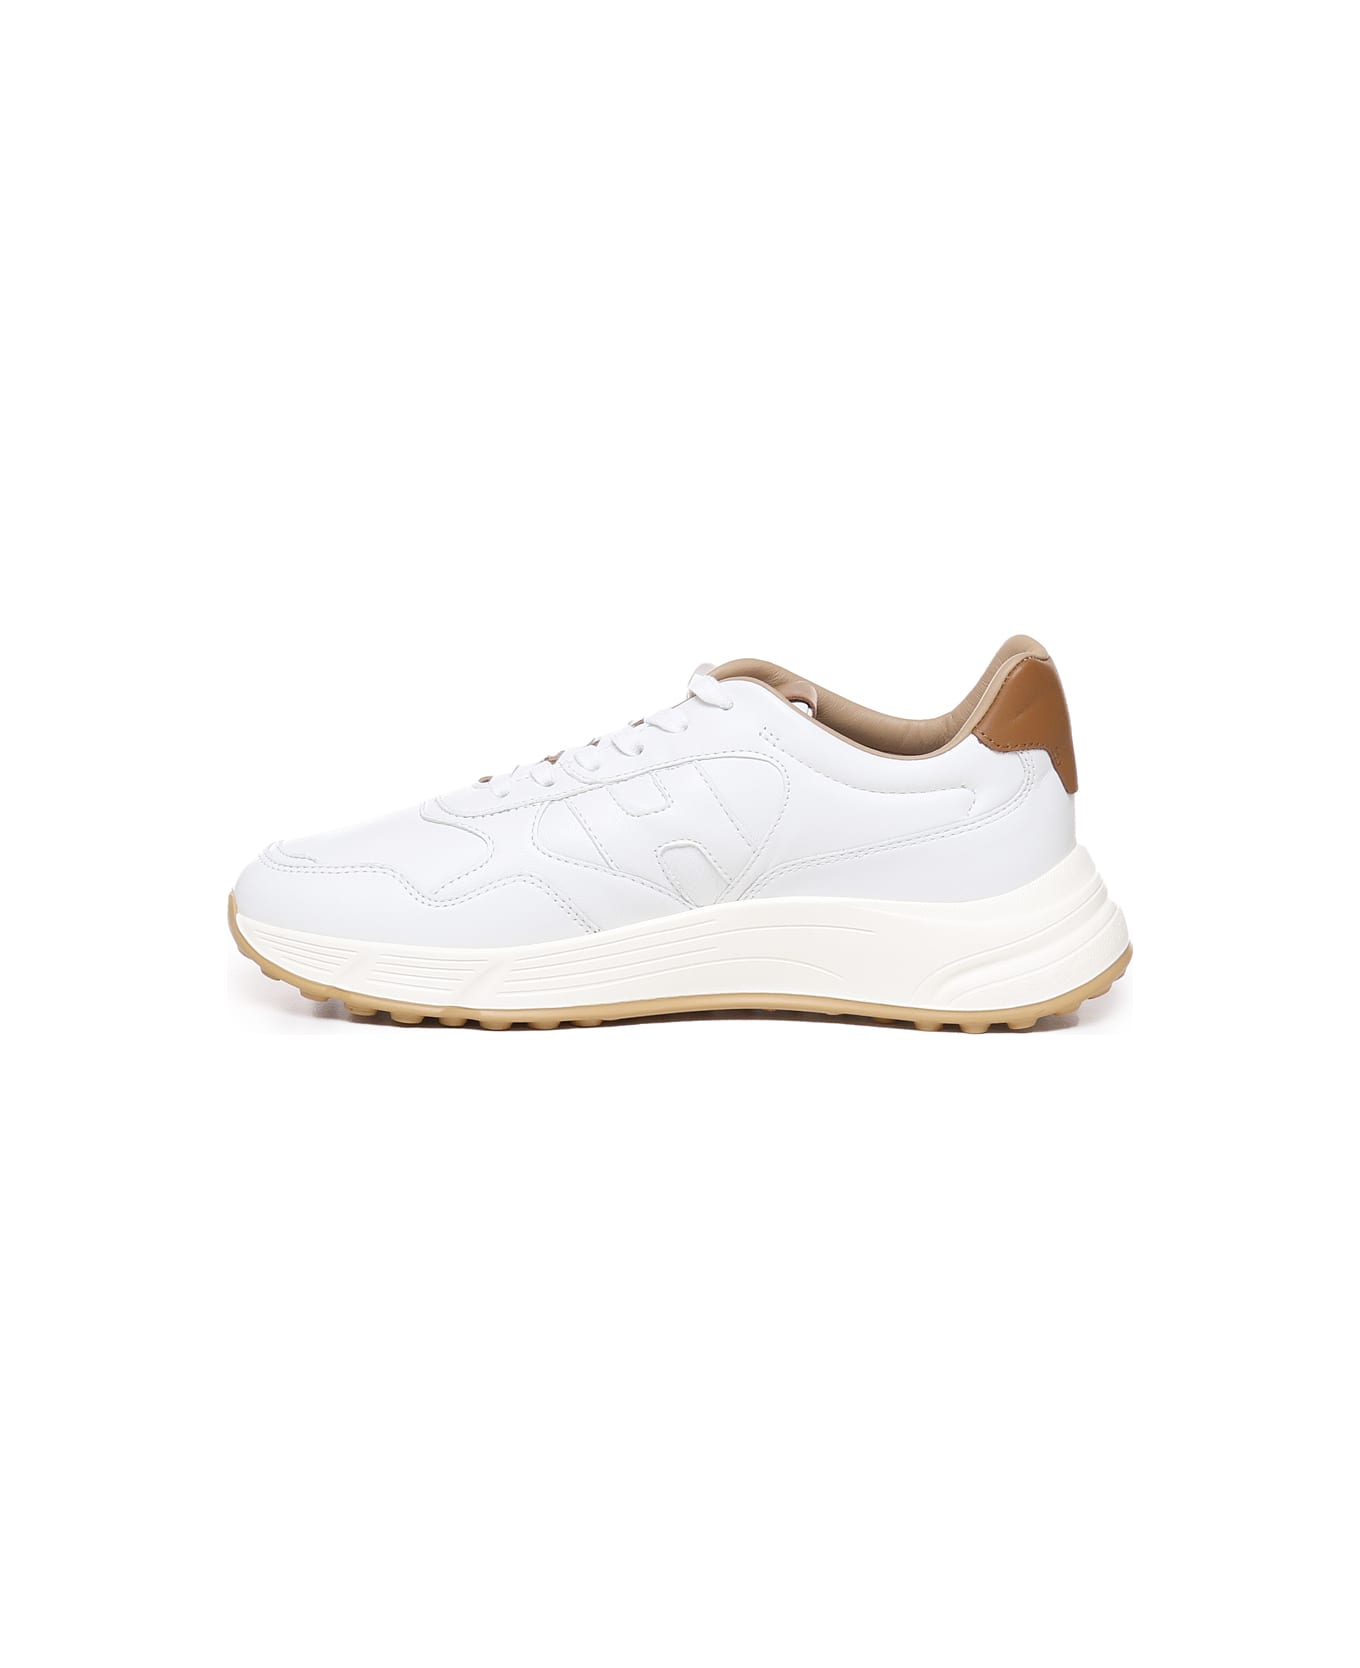 Hogan Hyperlight Sneakers - White